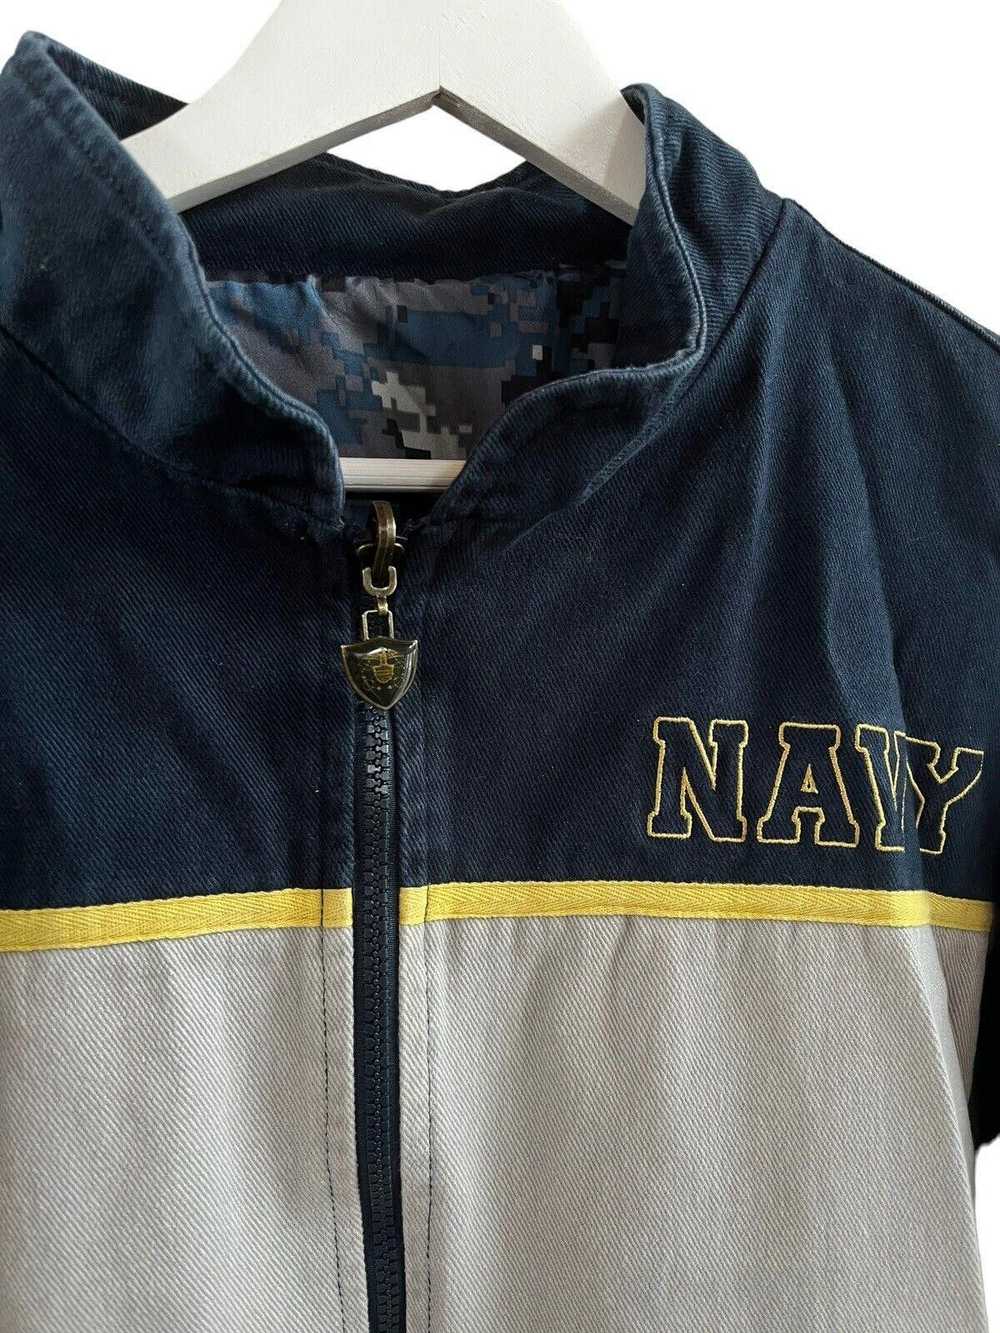 Designer 2011 Navy USA Reversible Jacket Men’s Me… - image 5